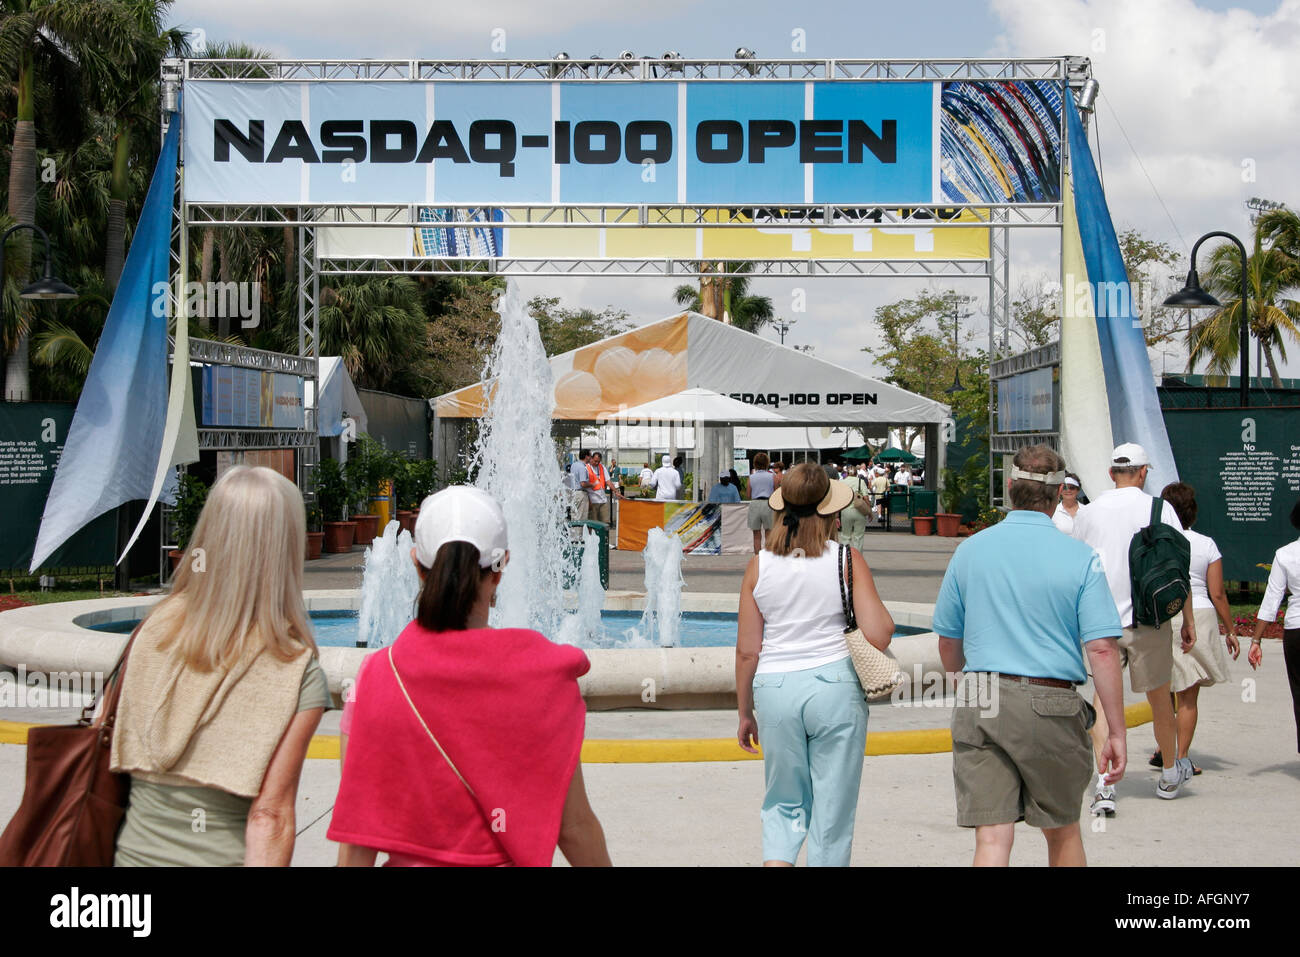 Miami Florida,Key Biscayne,NASDAQ 100 Open,tournoi de tennis pro,entrée,devant,les visiteurs voyage visite touristique sites touristiques culte Banque D'Images